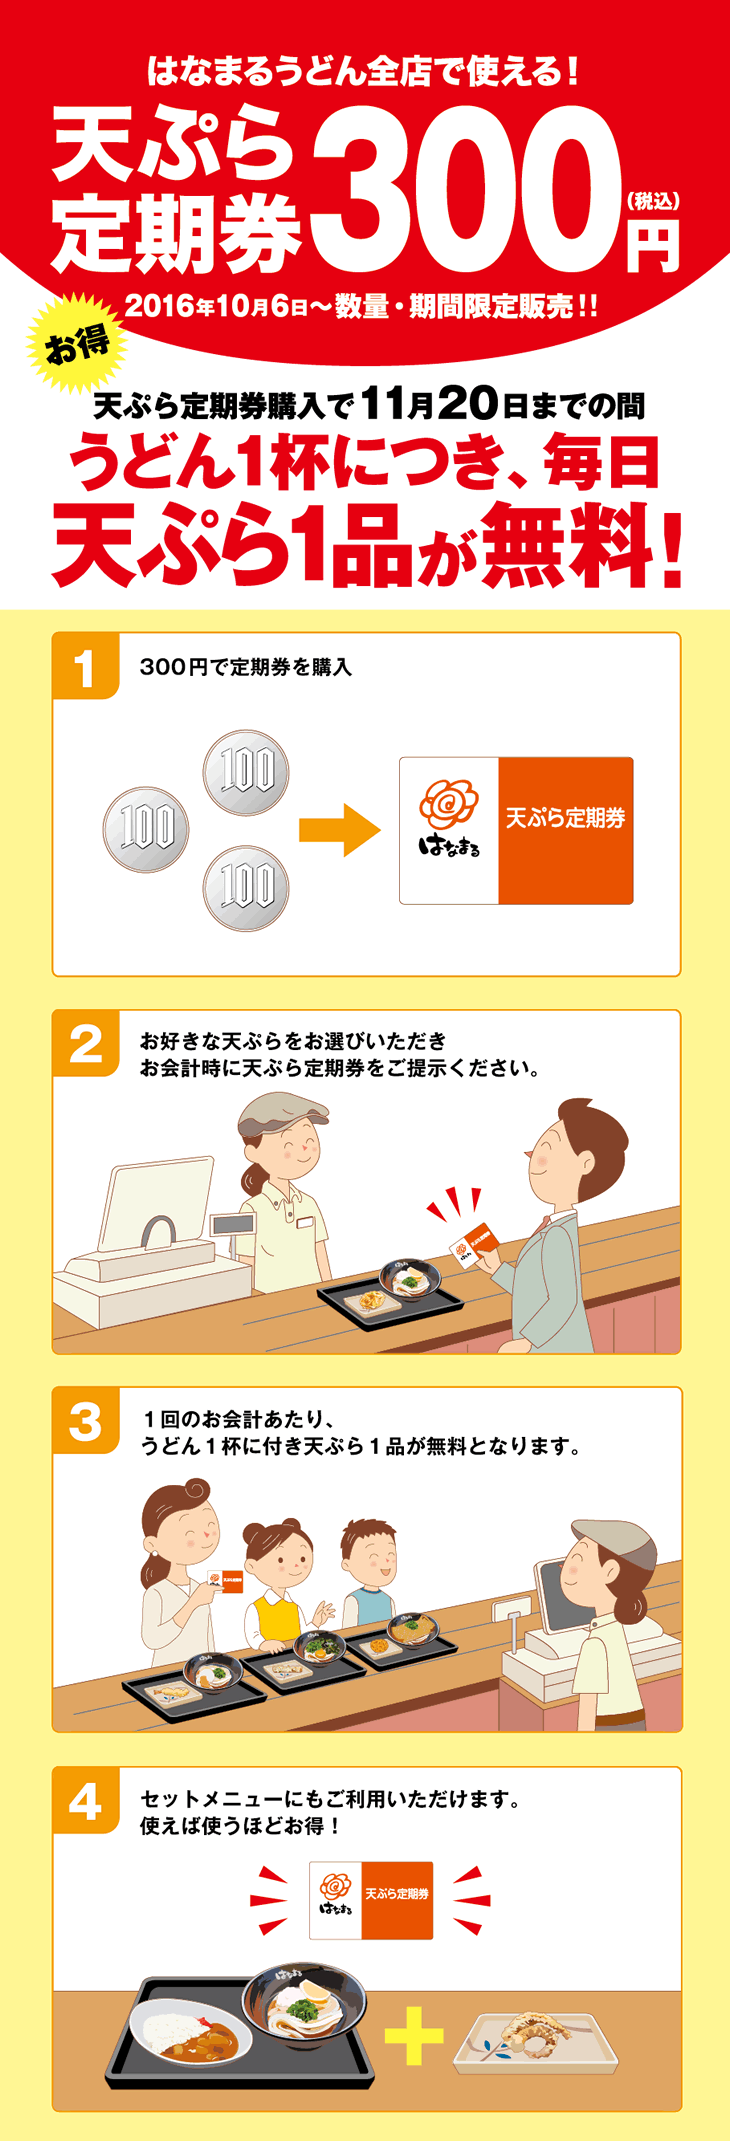 【朗報】はなまるうどん、たった300円で毎日天ぷら食べ放題